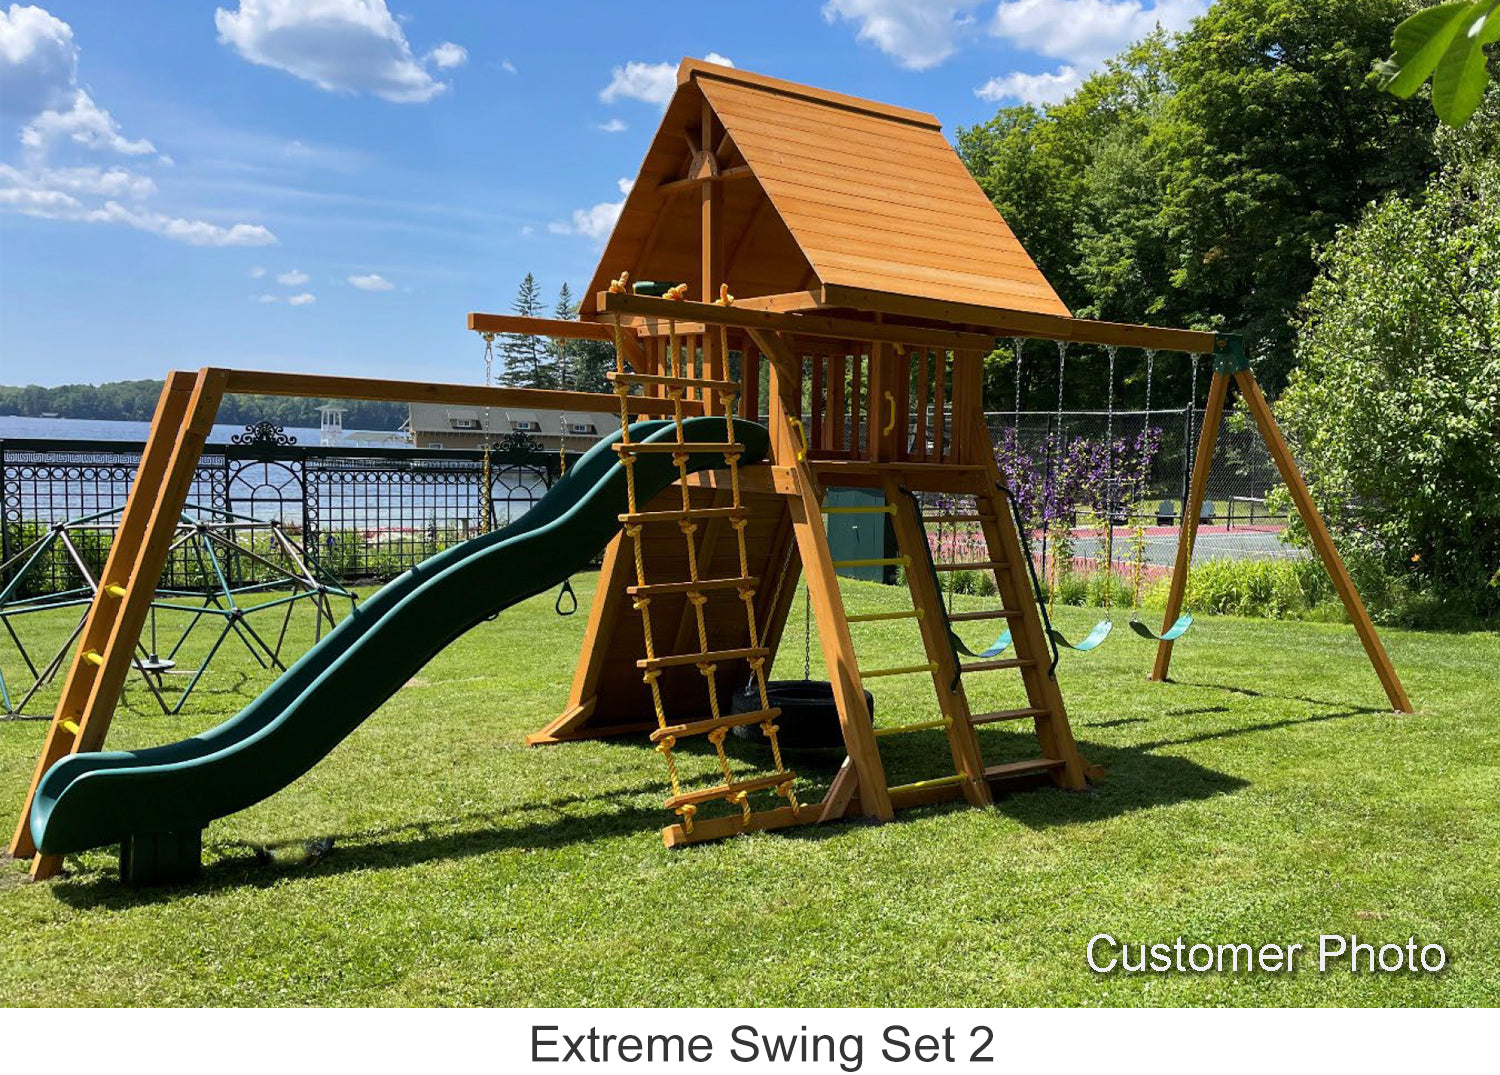 Extreme Swing Set 2 Customer Photo